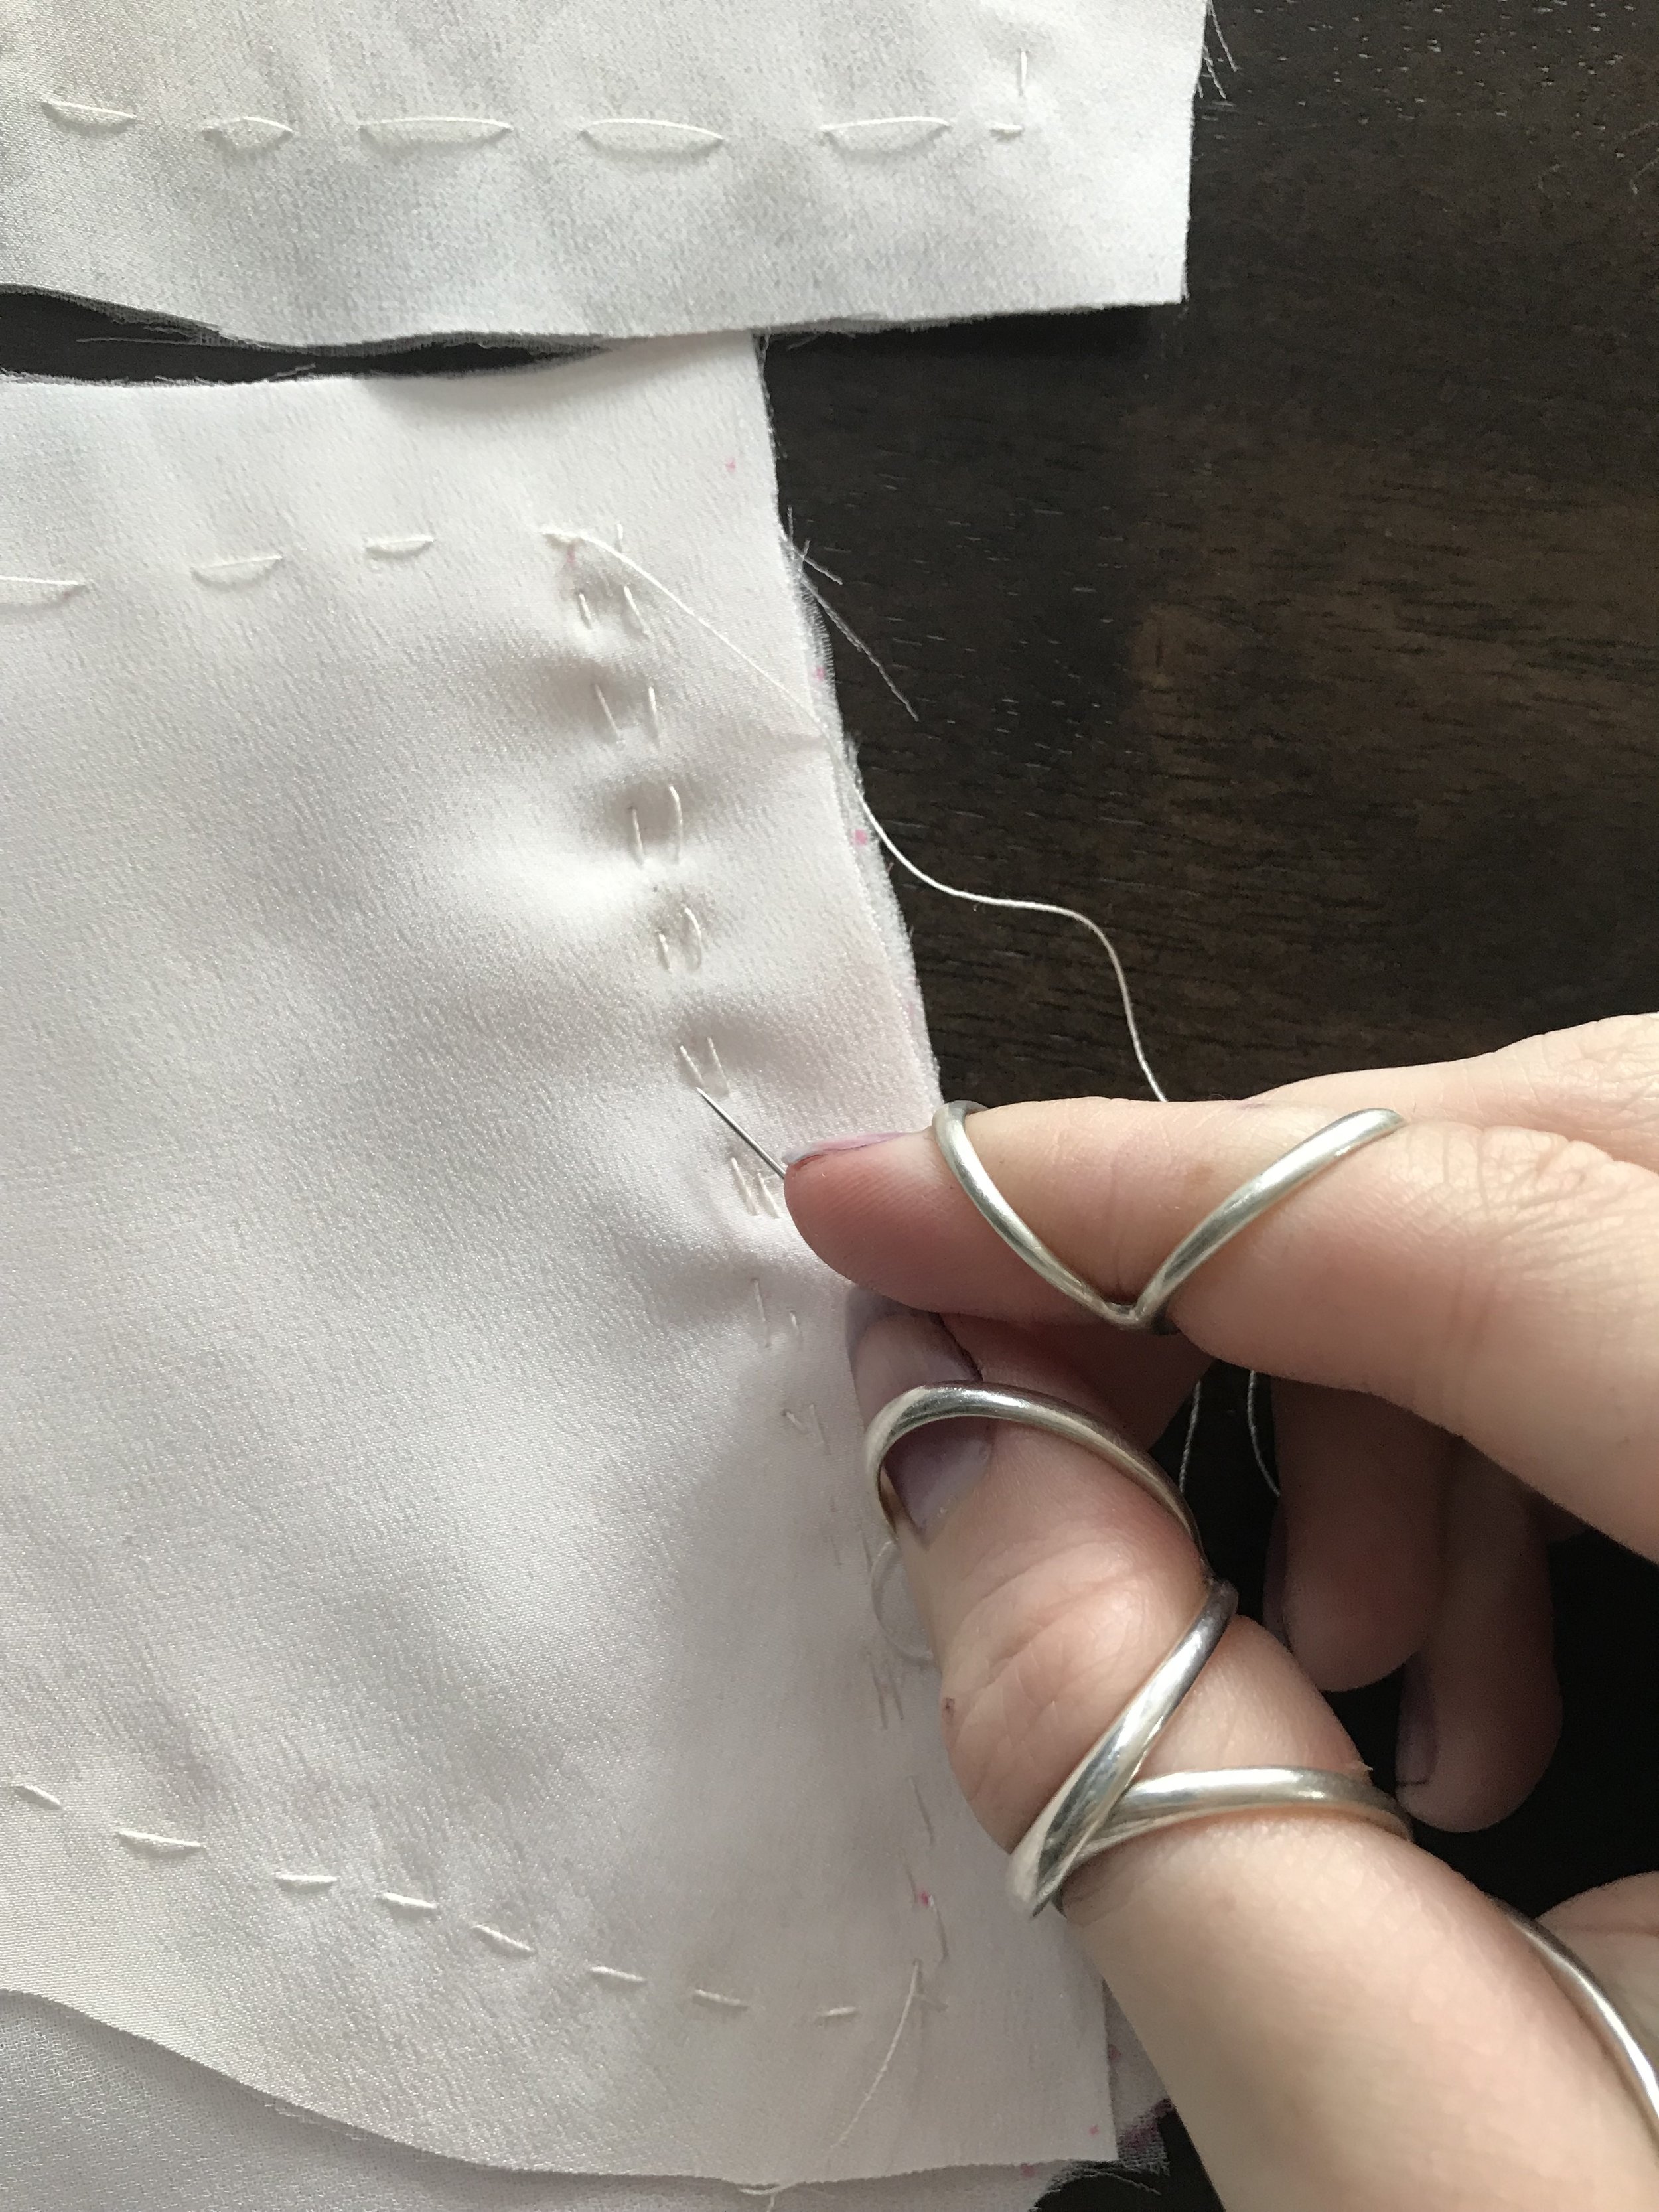 Handmade Wedding Dress Chapter 11: Skirt Construction and Dress